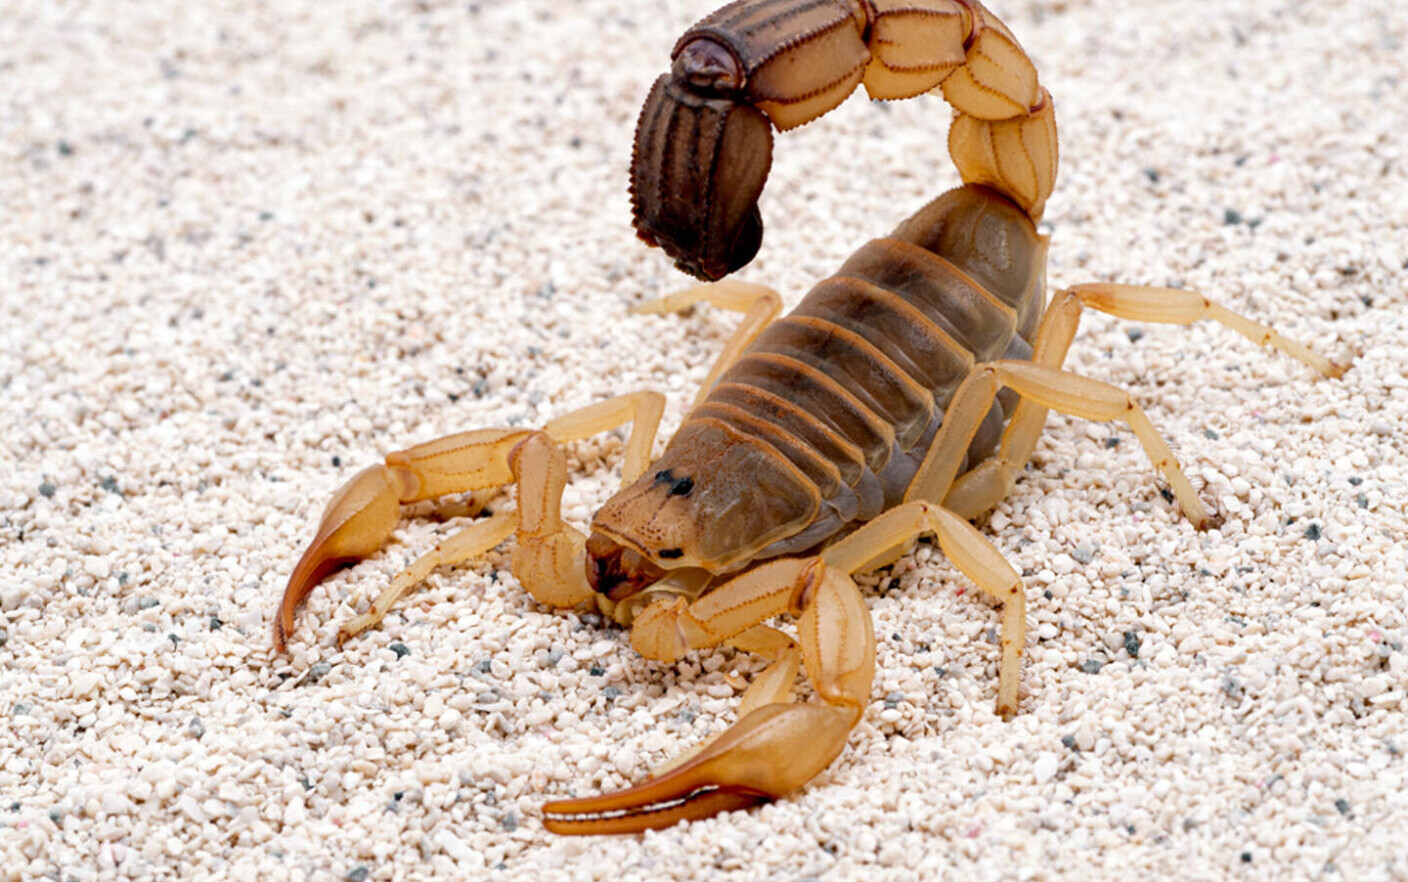 Specie de scorpion